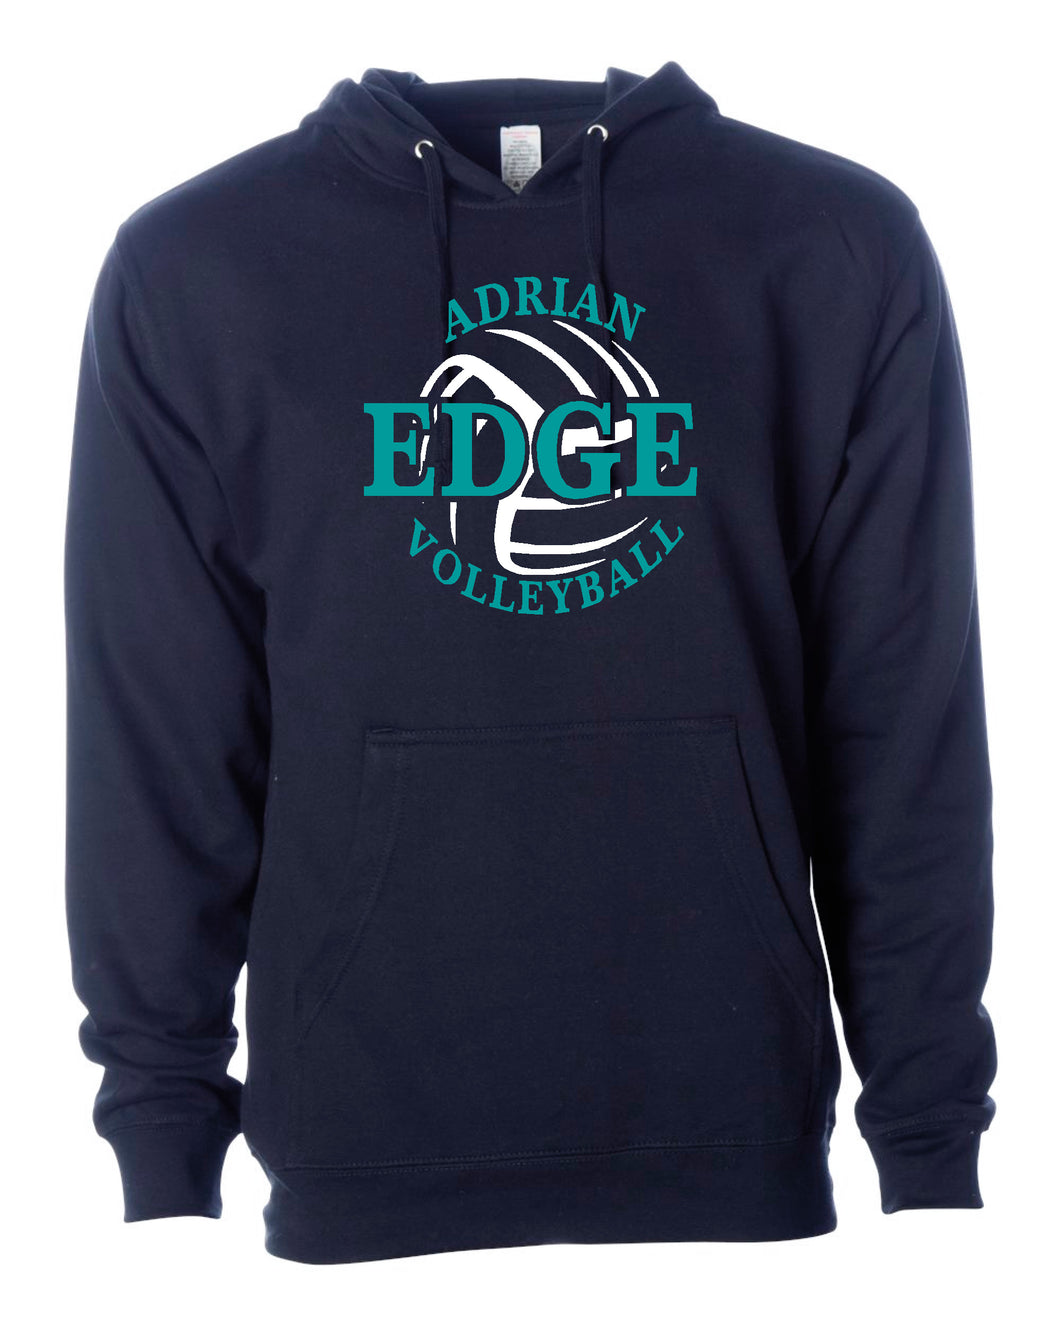 ADRIAN EDGE VOLLEYBALL Navy Independent Sweatshirt